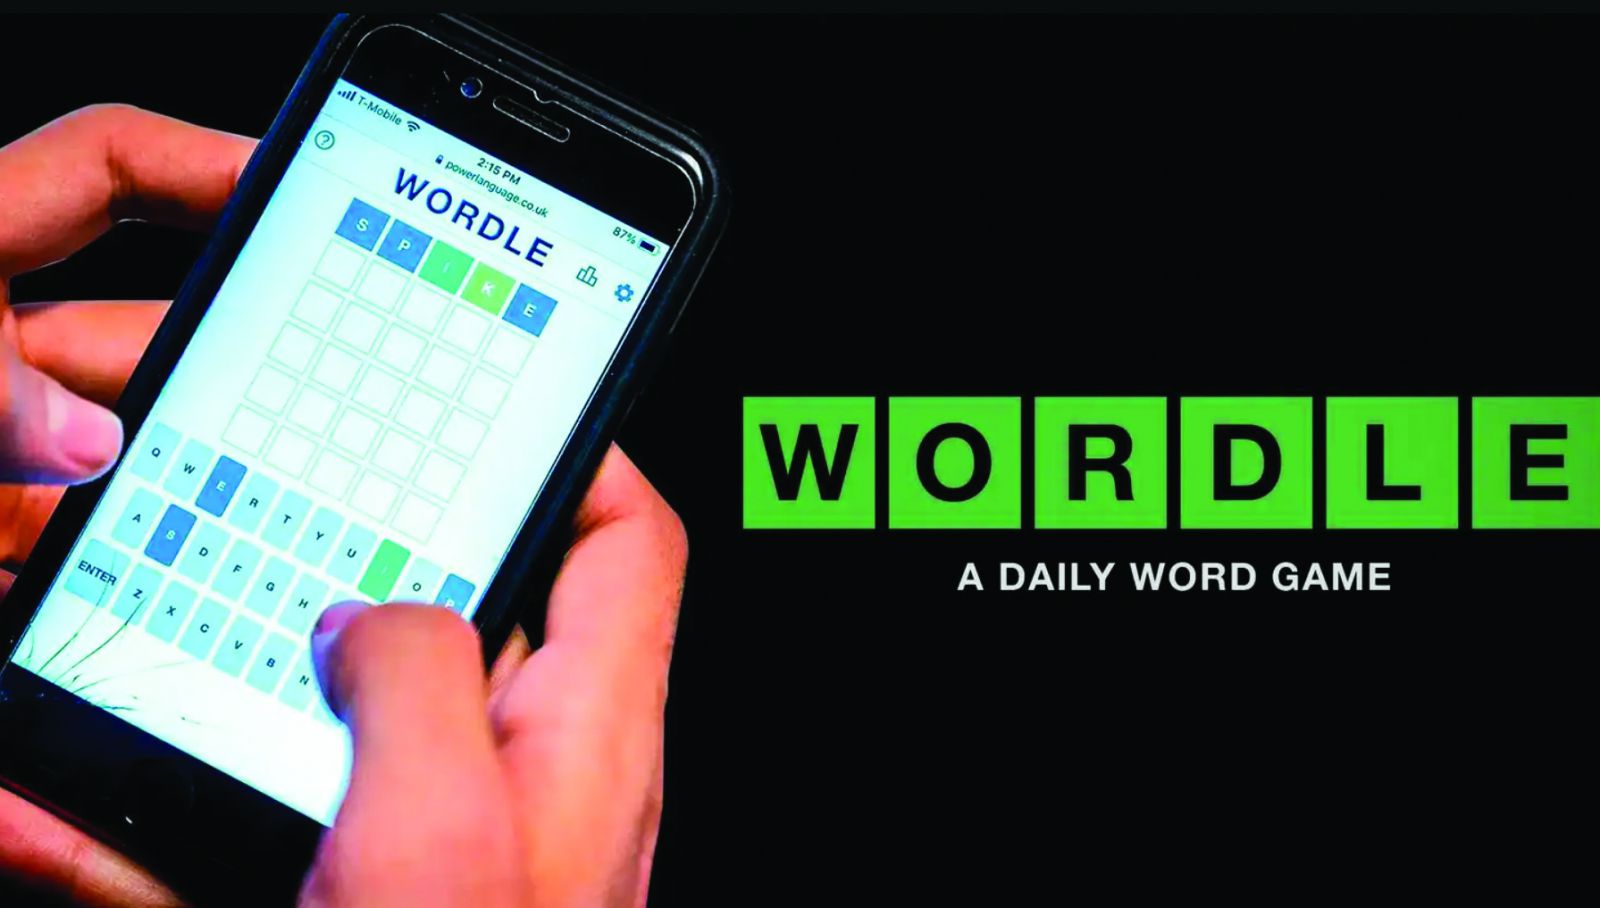  Yếu tố “mỗi ngày một lần” là điểm khiến Wordle cực kì gây nghiện.